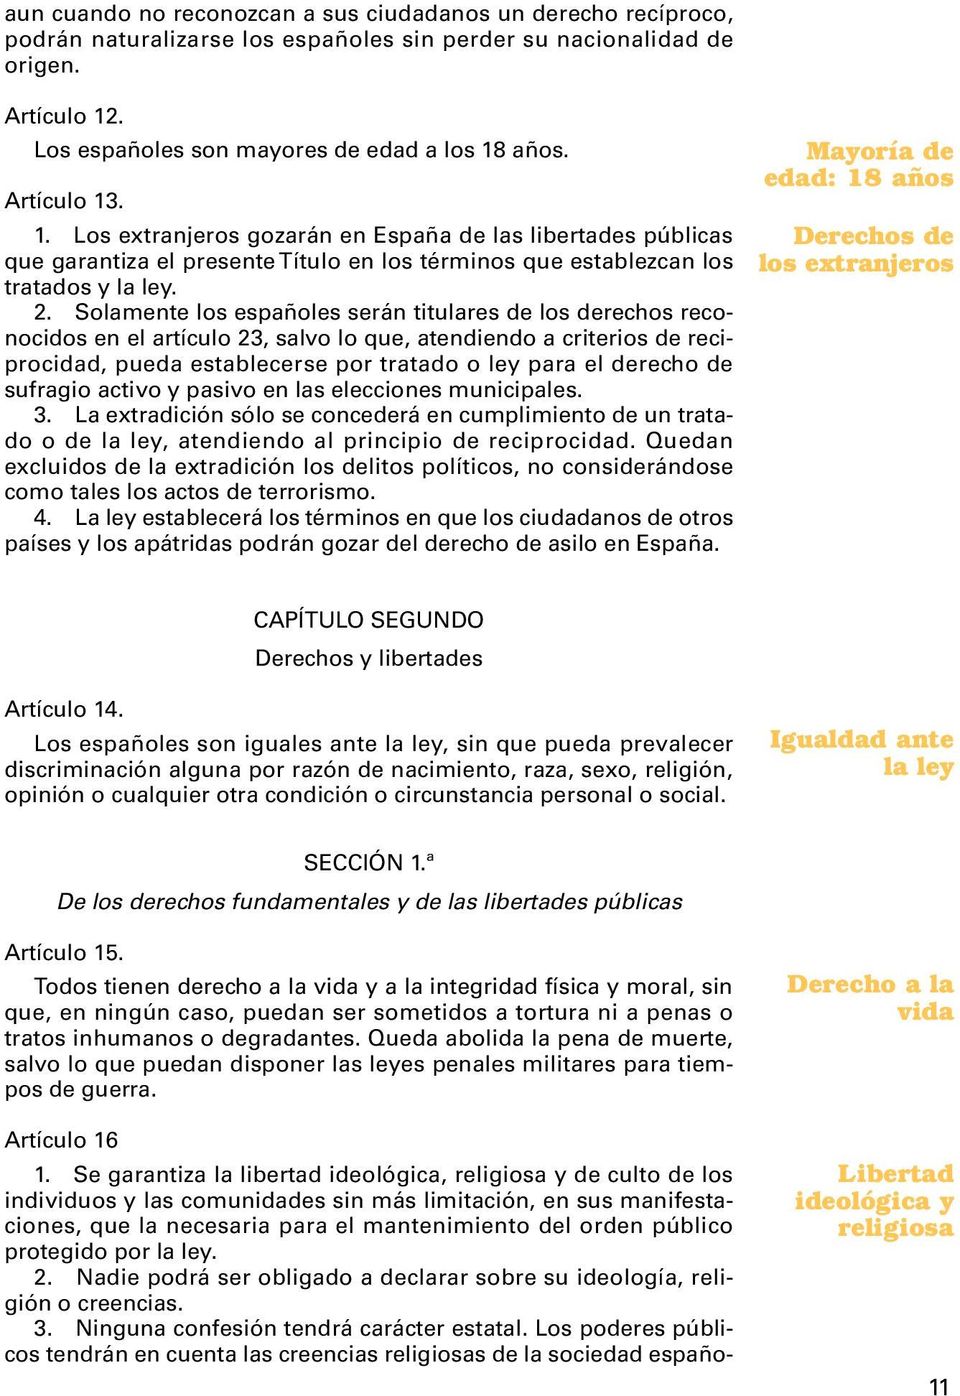 Solamente los españoles serán titulares de los derechos reconocidos en el artículo 23, salvo lo que, atendiendo a criterios de reciprocidad, pueda establecerse por tratado o ley para el derecho de